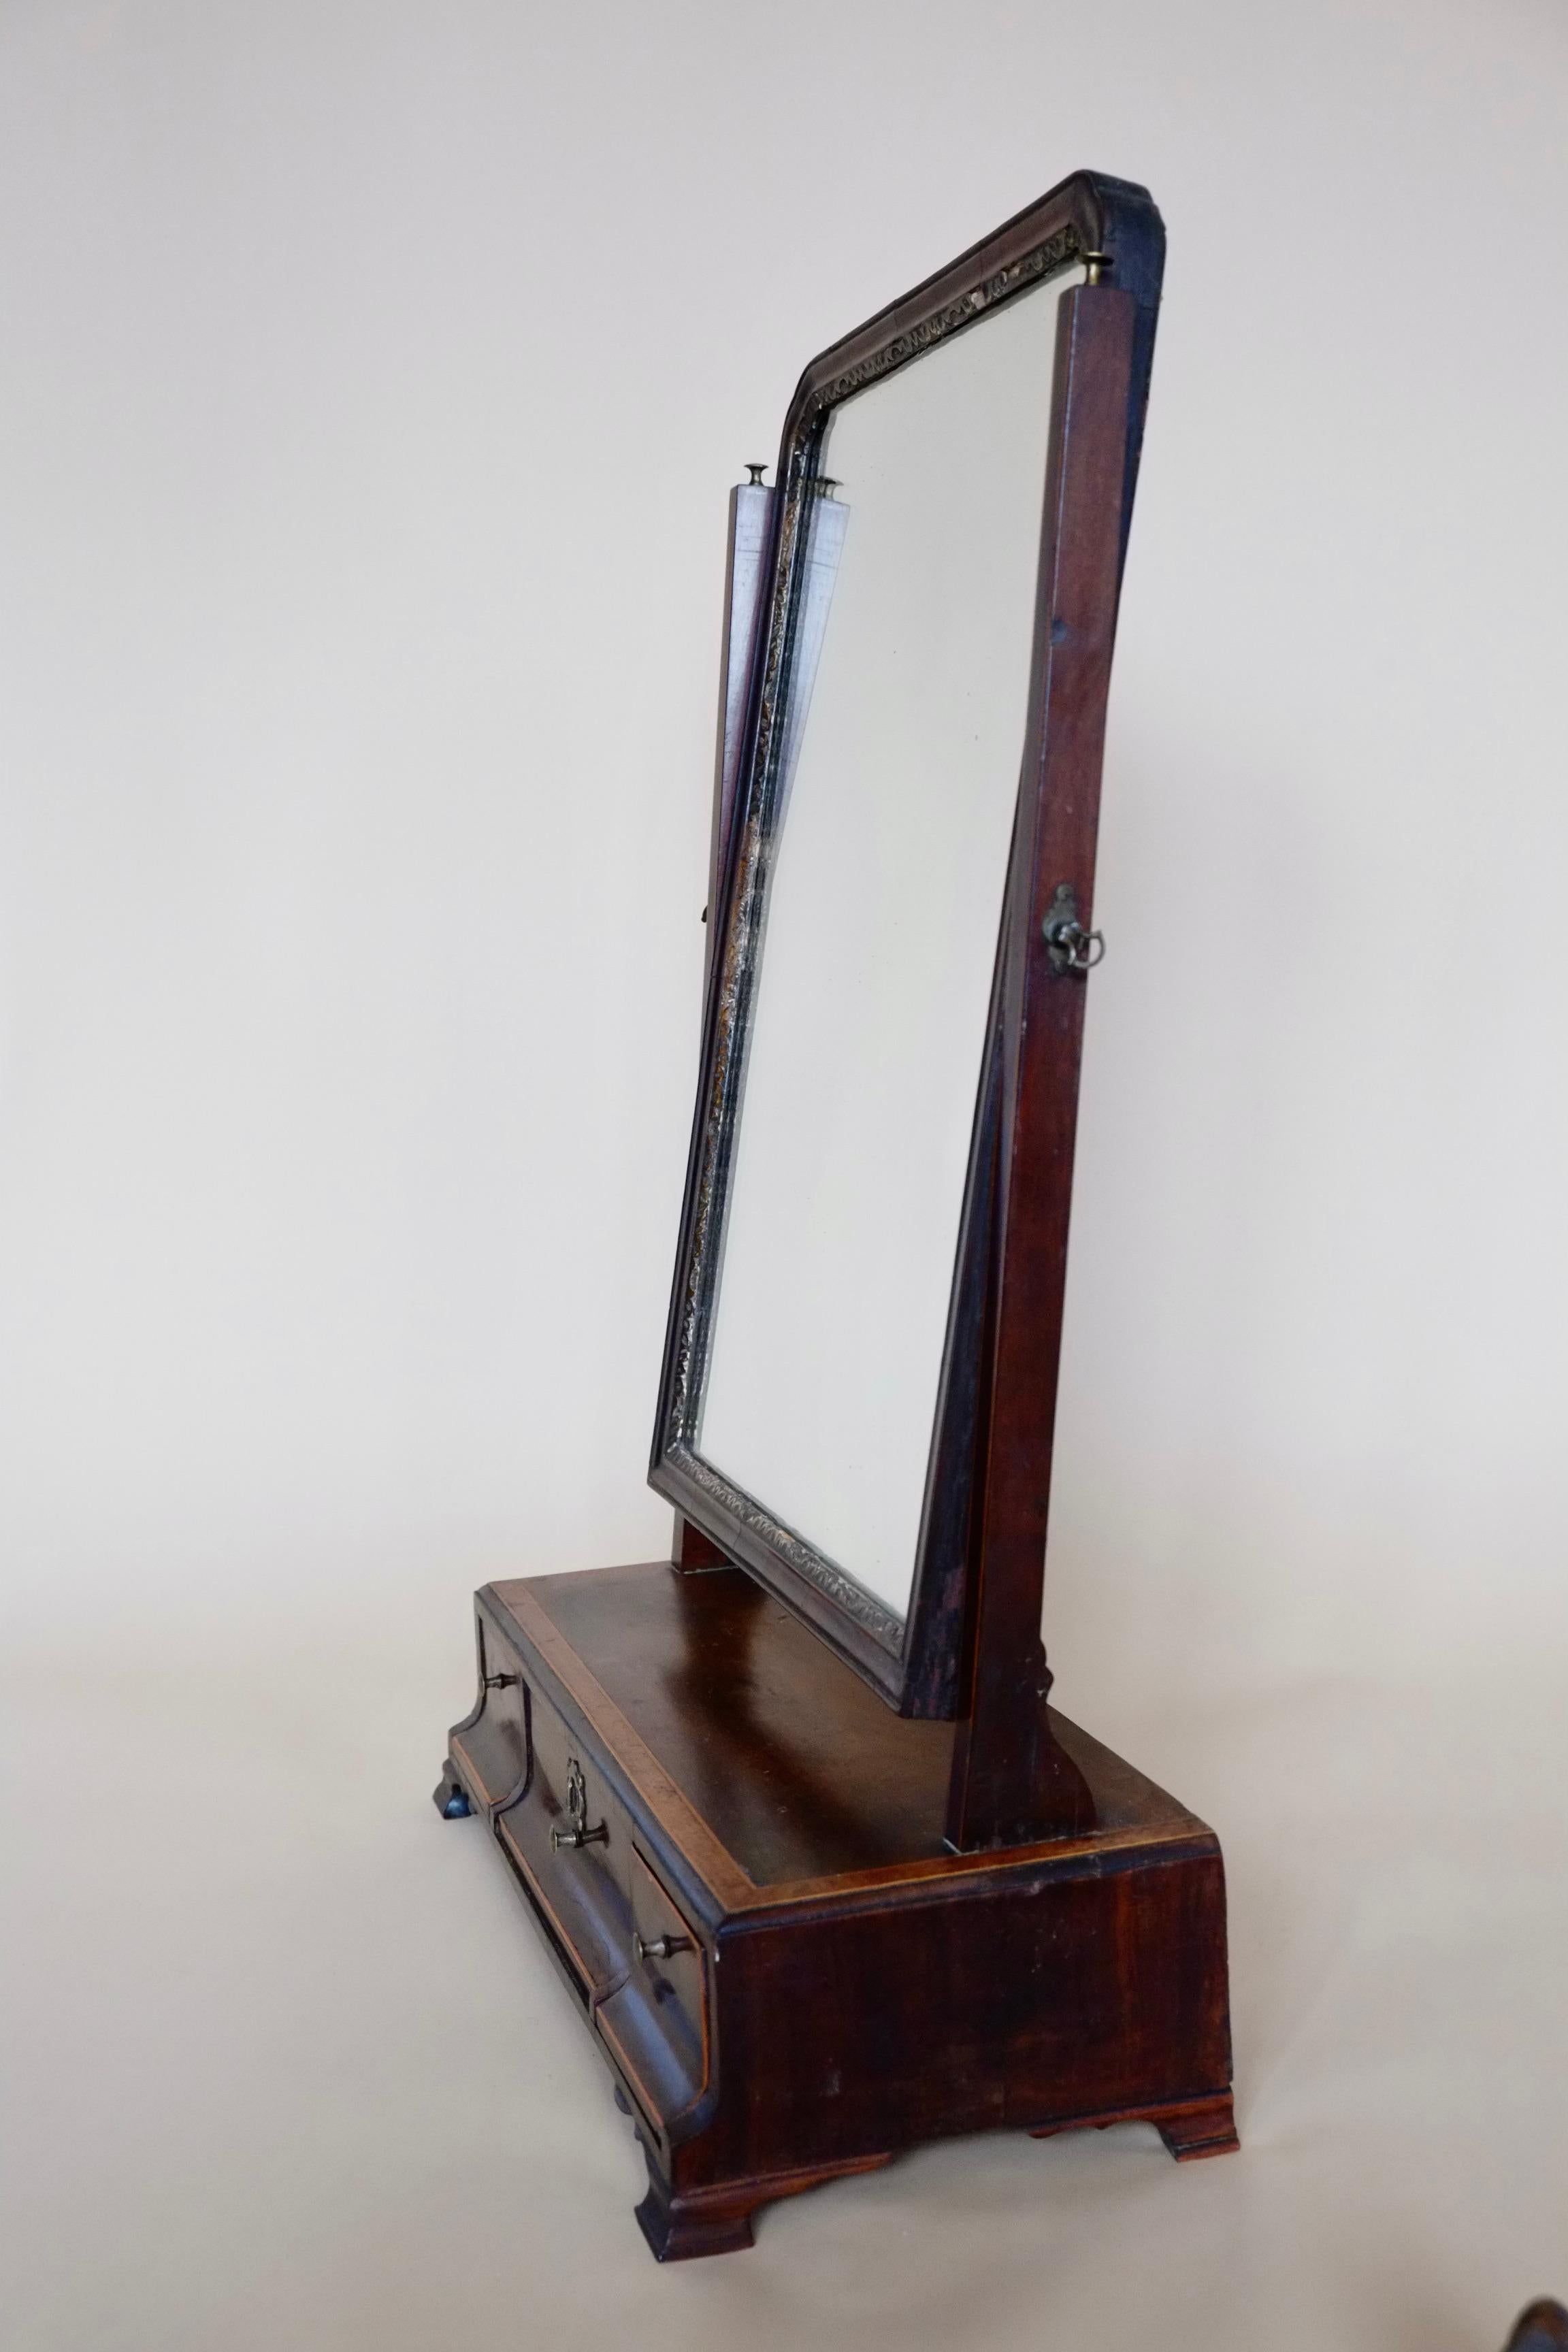 Dies ist ein antiker englischer Frisiertischspiegel. Spiegel aus georgianischem Mahagoni, um 1800. Ein sehr schöner Ankleidespiegel aus reichem Mahagoni mit der schönsten geflammten Wurzelholzeinlage. Die Spiegelplatte ist in sehr gutem Zustand,